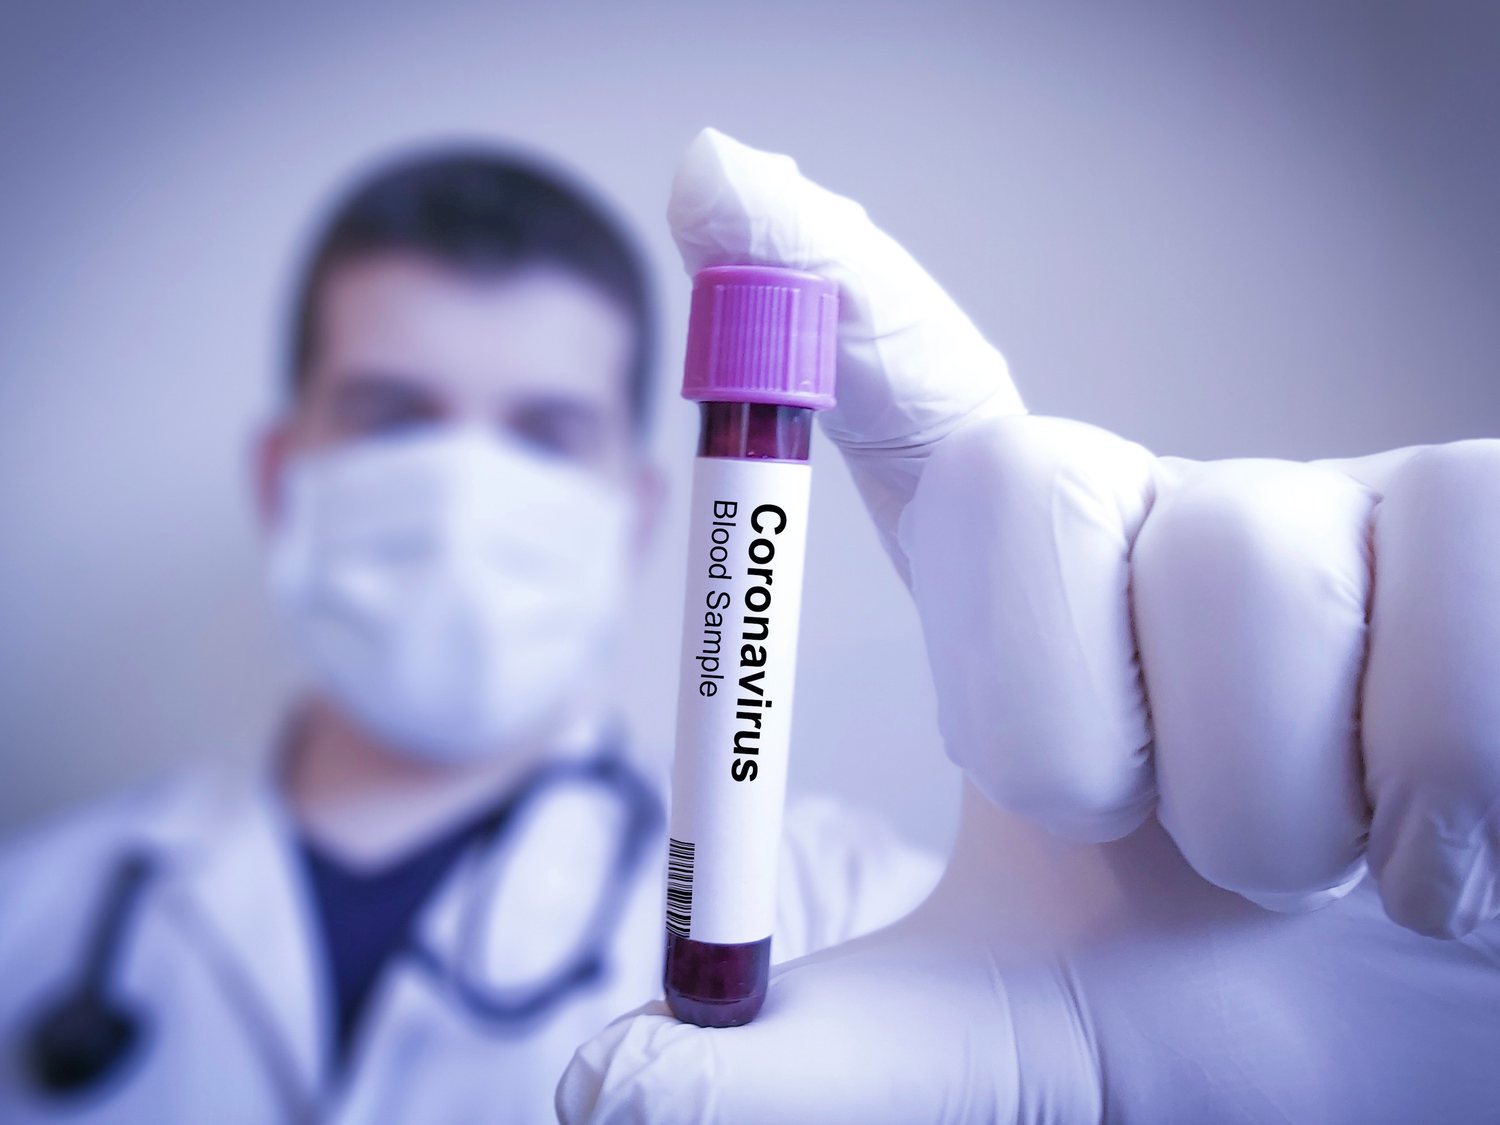 Un medicamento contra el colesterol podría convertir el Covid-19 en un simple resfriado